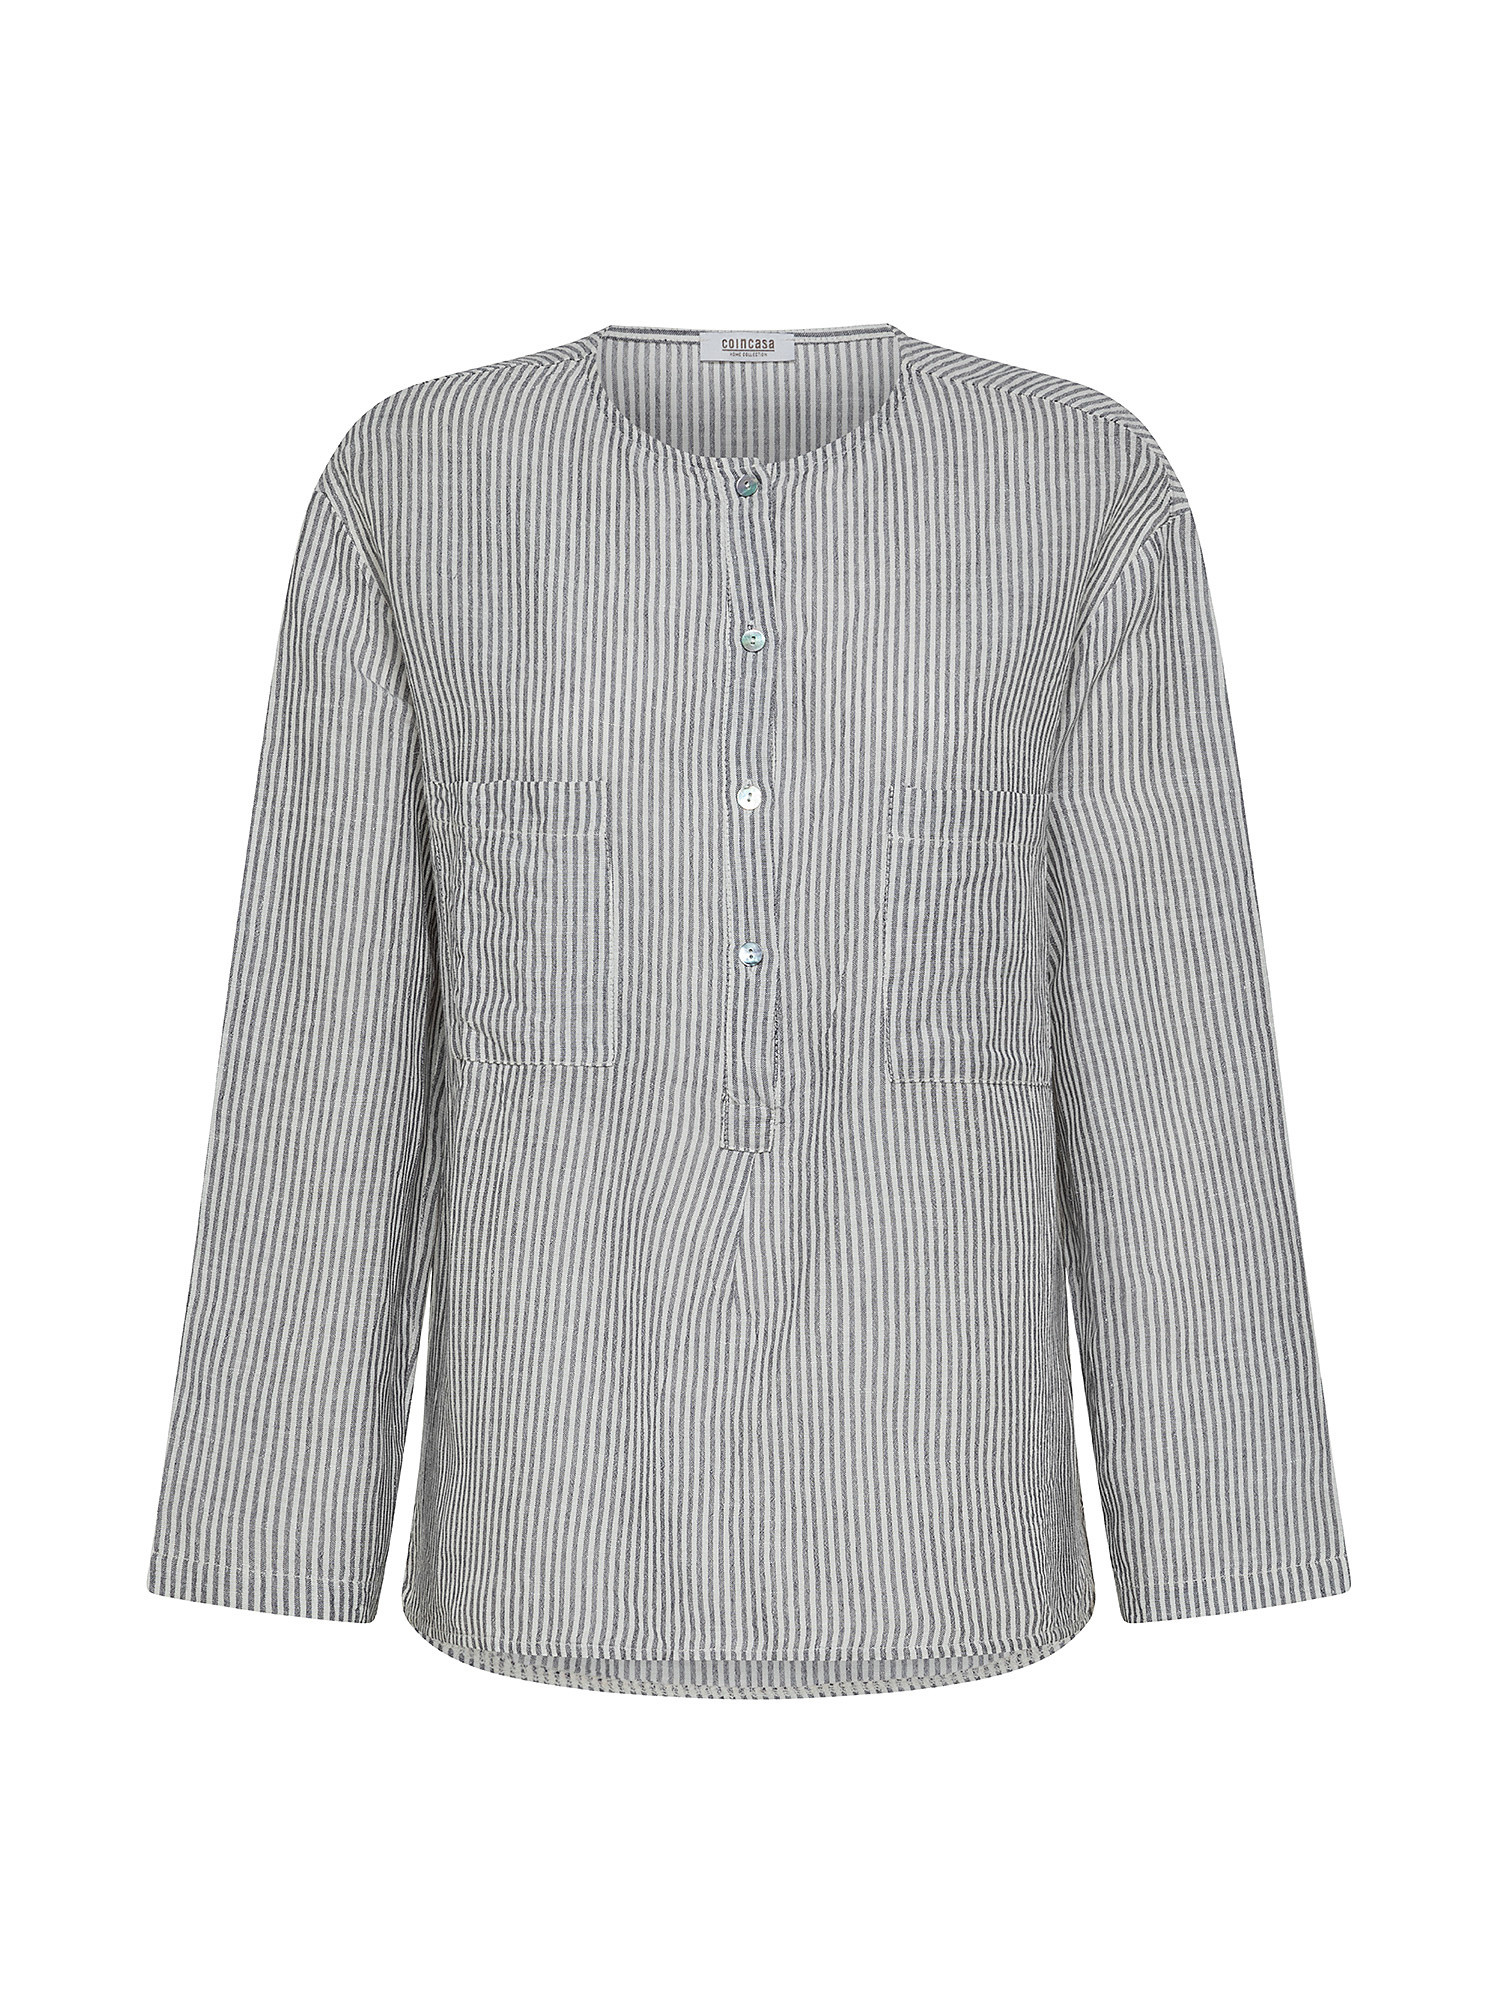 Striped linen blend shirt, Light Blue, large image number 0